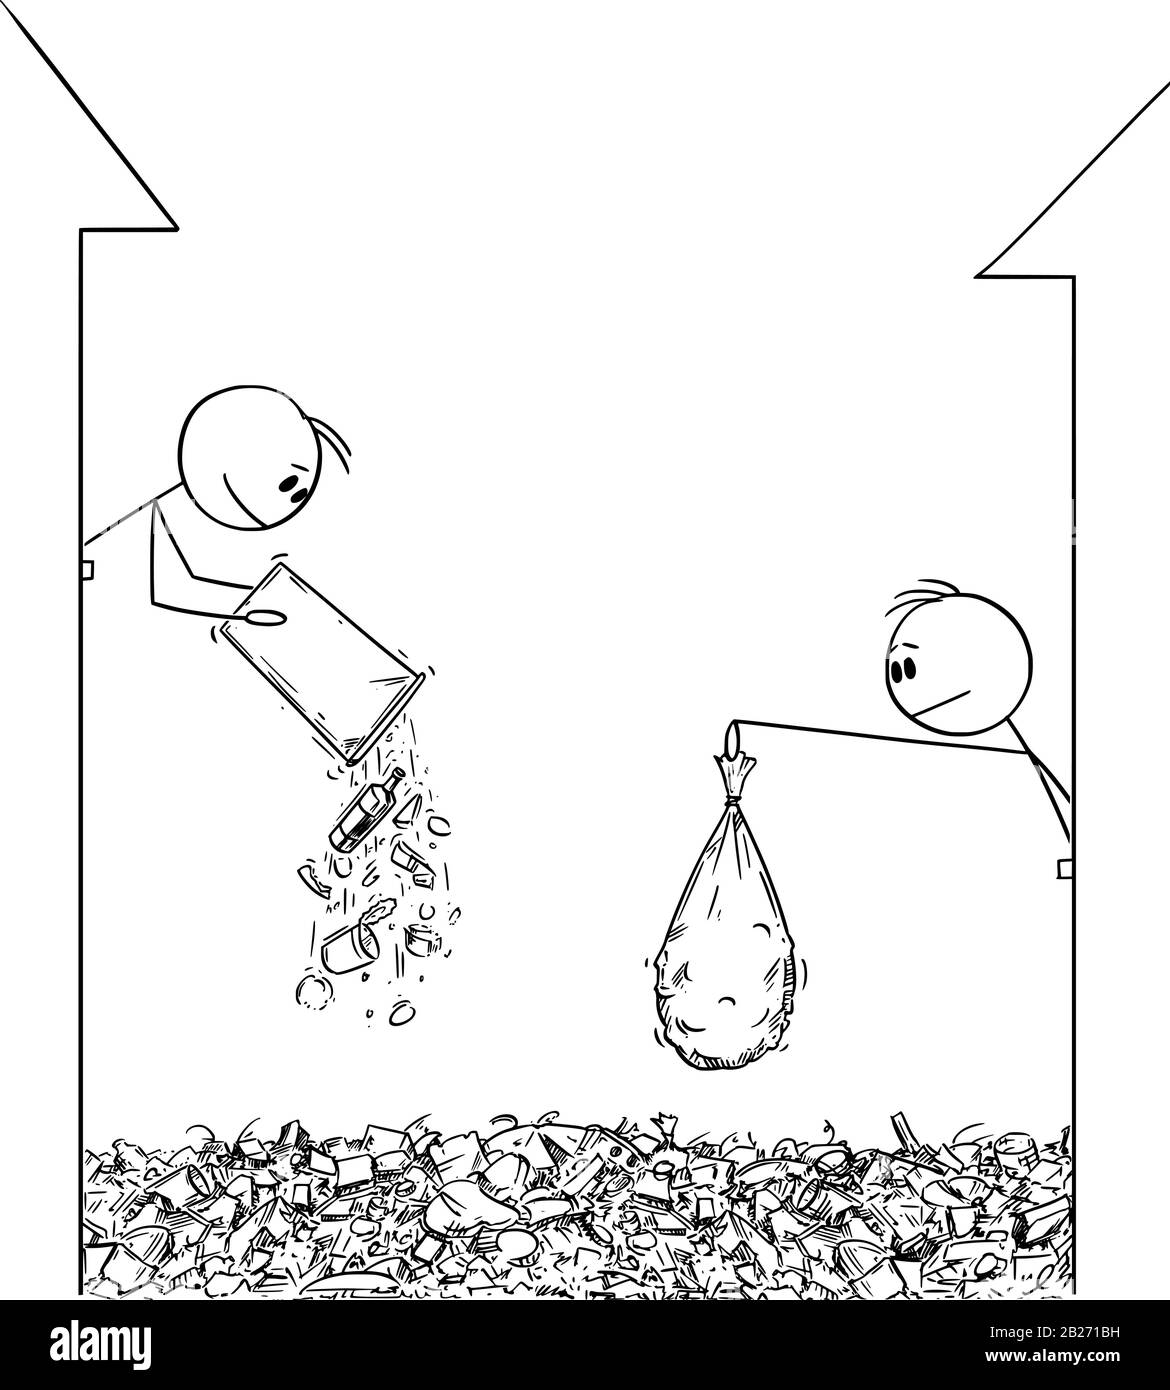 Figura del fumetto vettoriale che disegna l'illustrazione concettuale della gente che getta lo spreco dalla finestra sulla strada. Città sovraccaricata da immondizia. Illustrazione Vettoriale